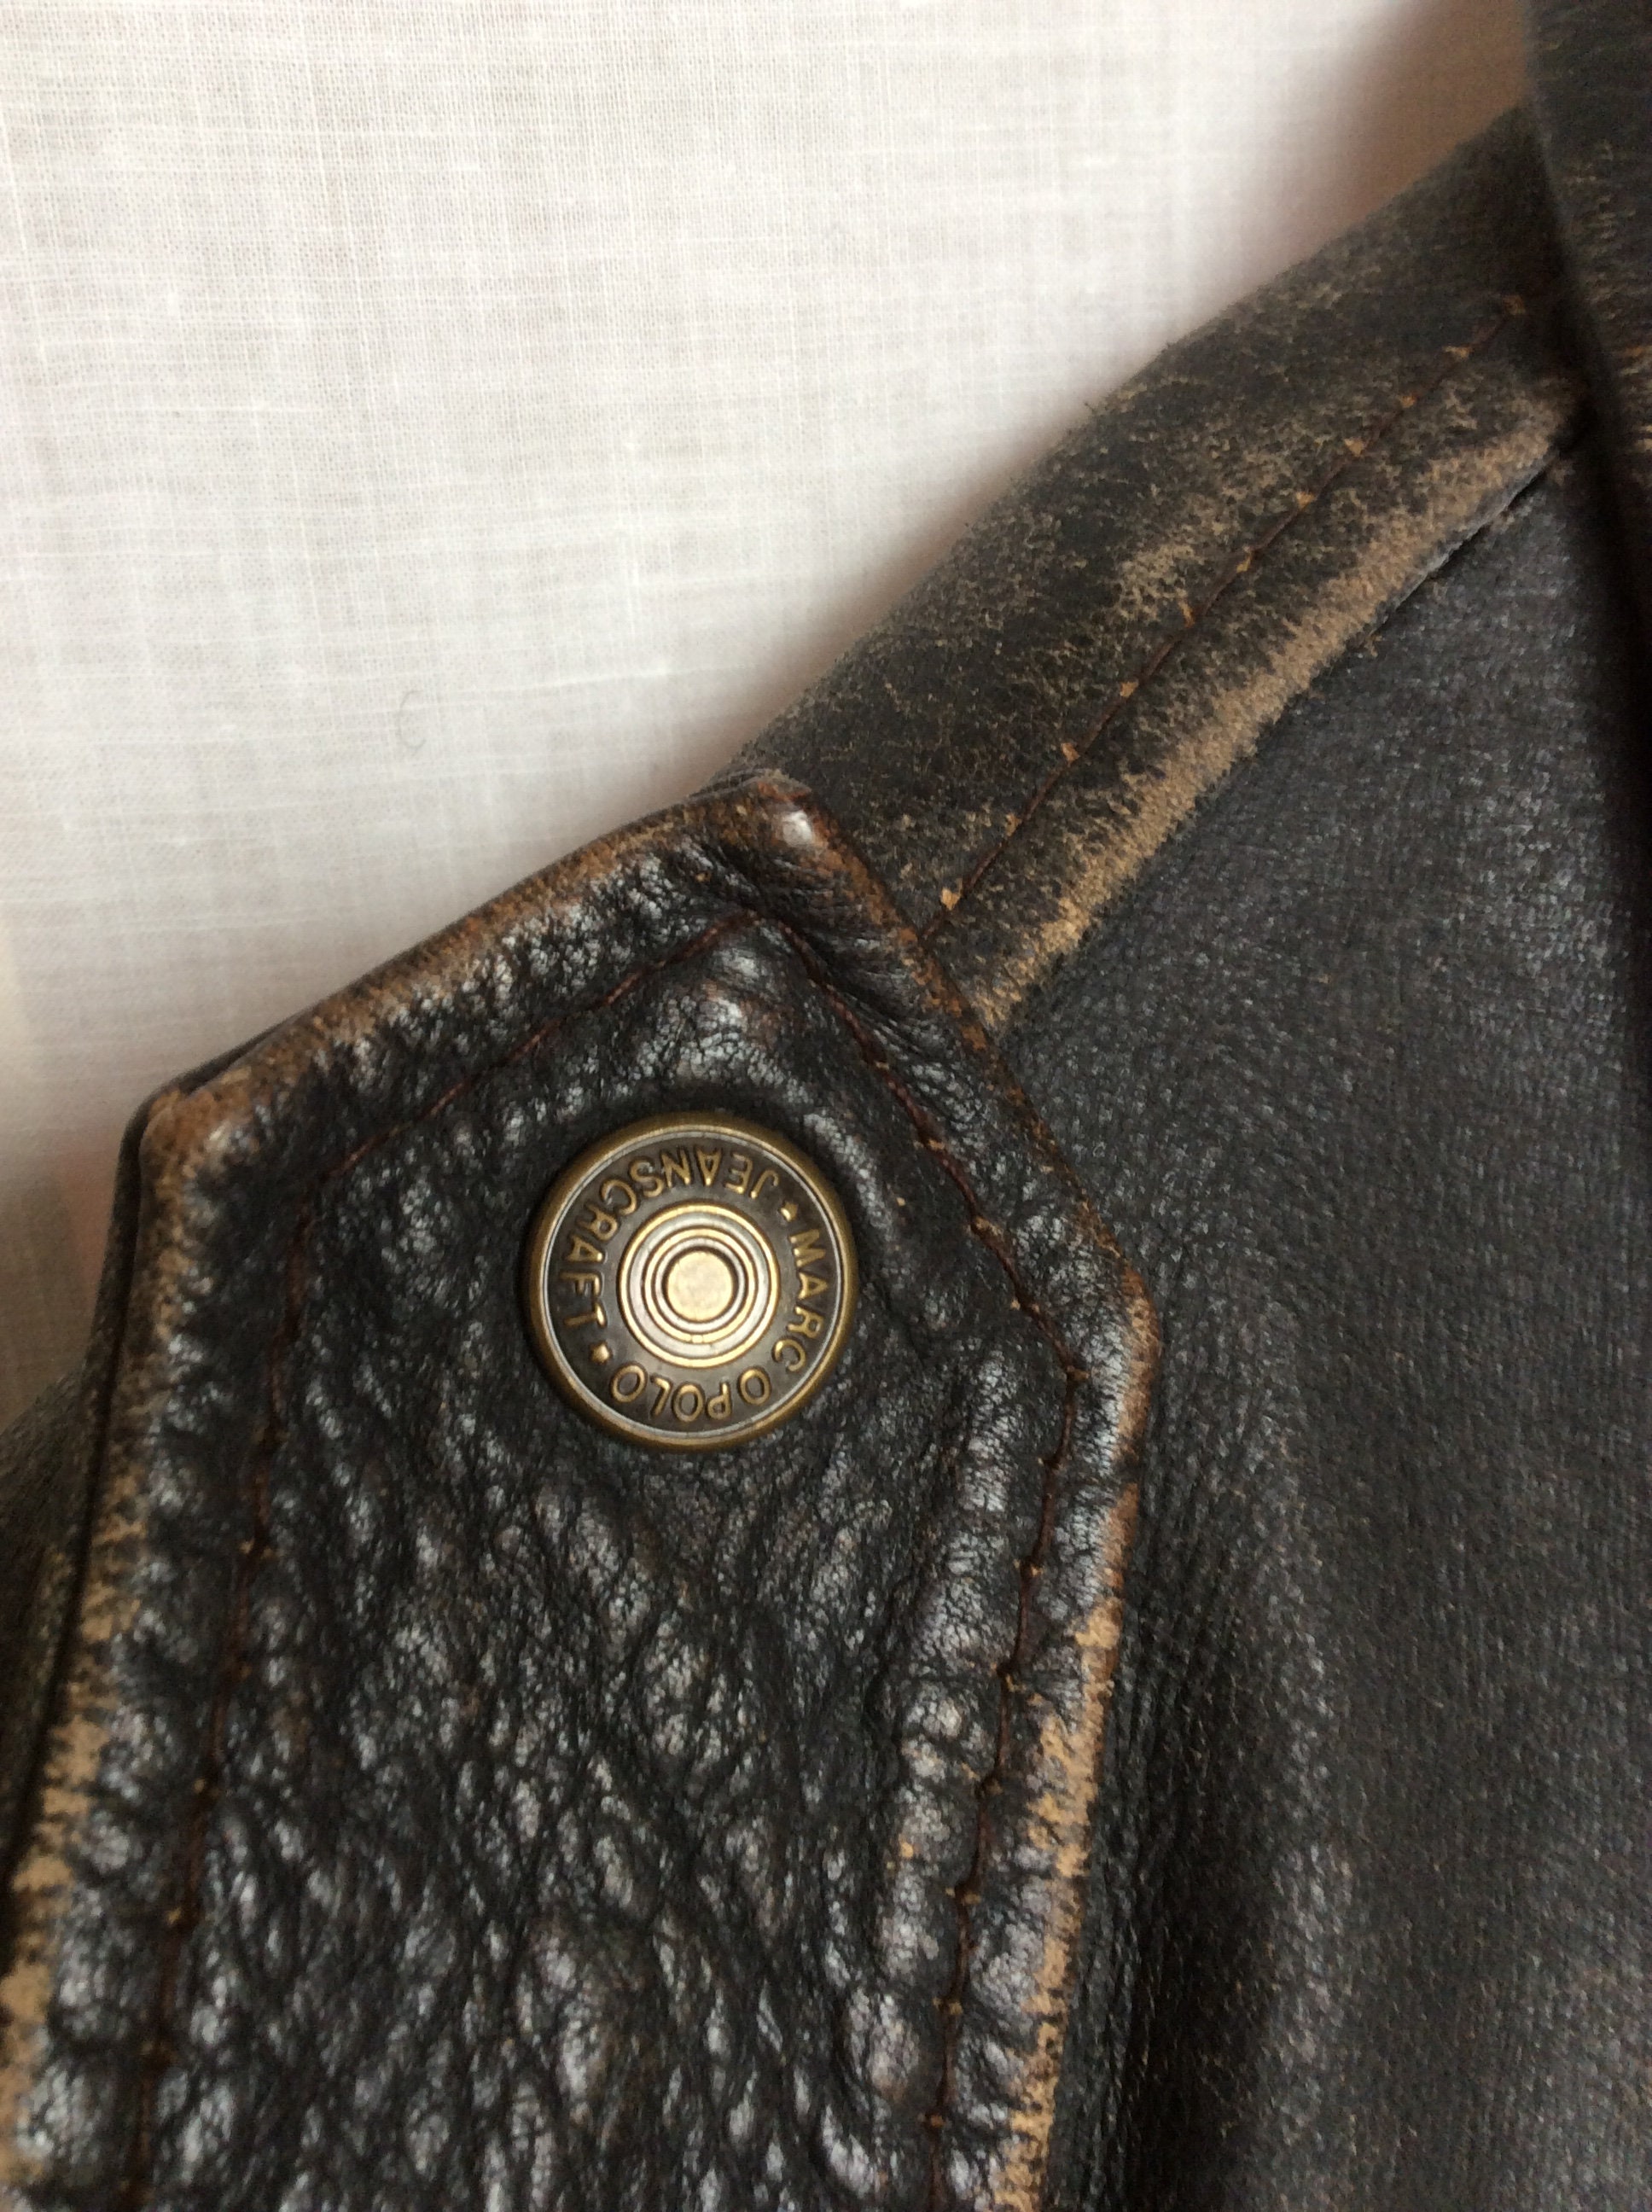 Distressed Leather Bomber Jacket Retro Vintage Medium Size - Etsy